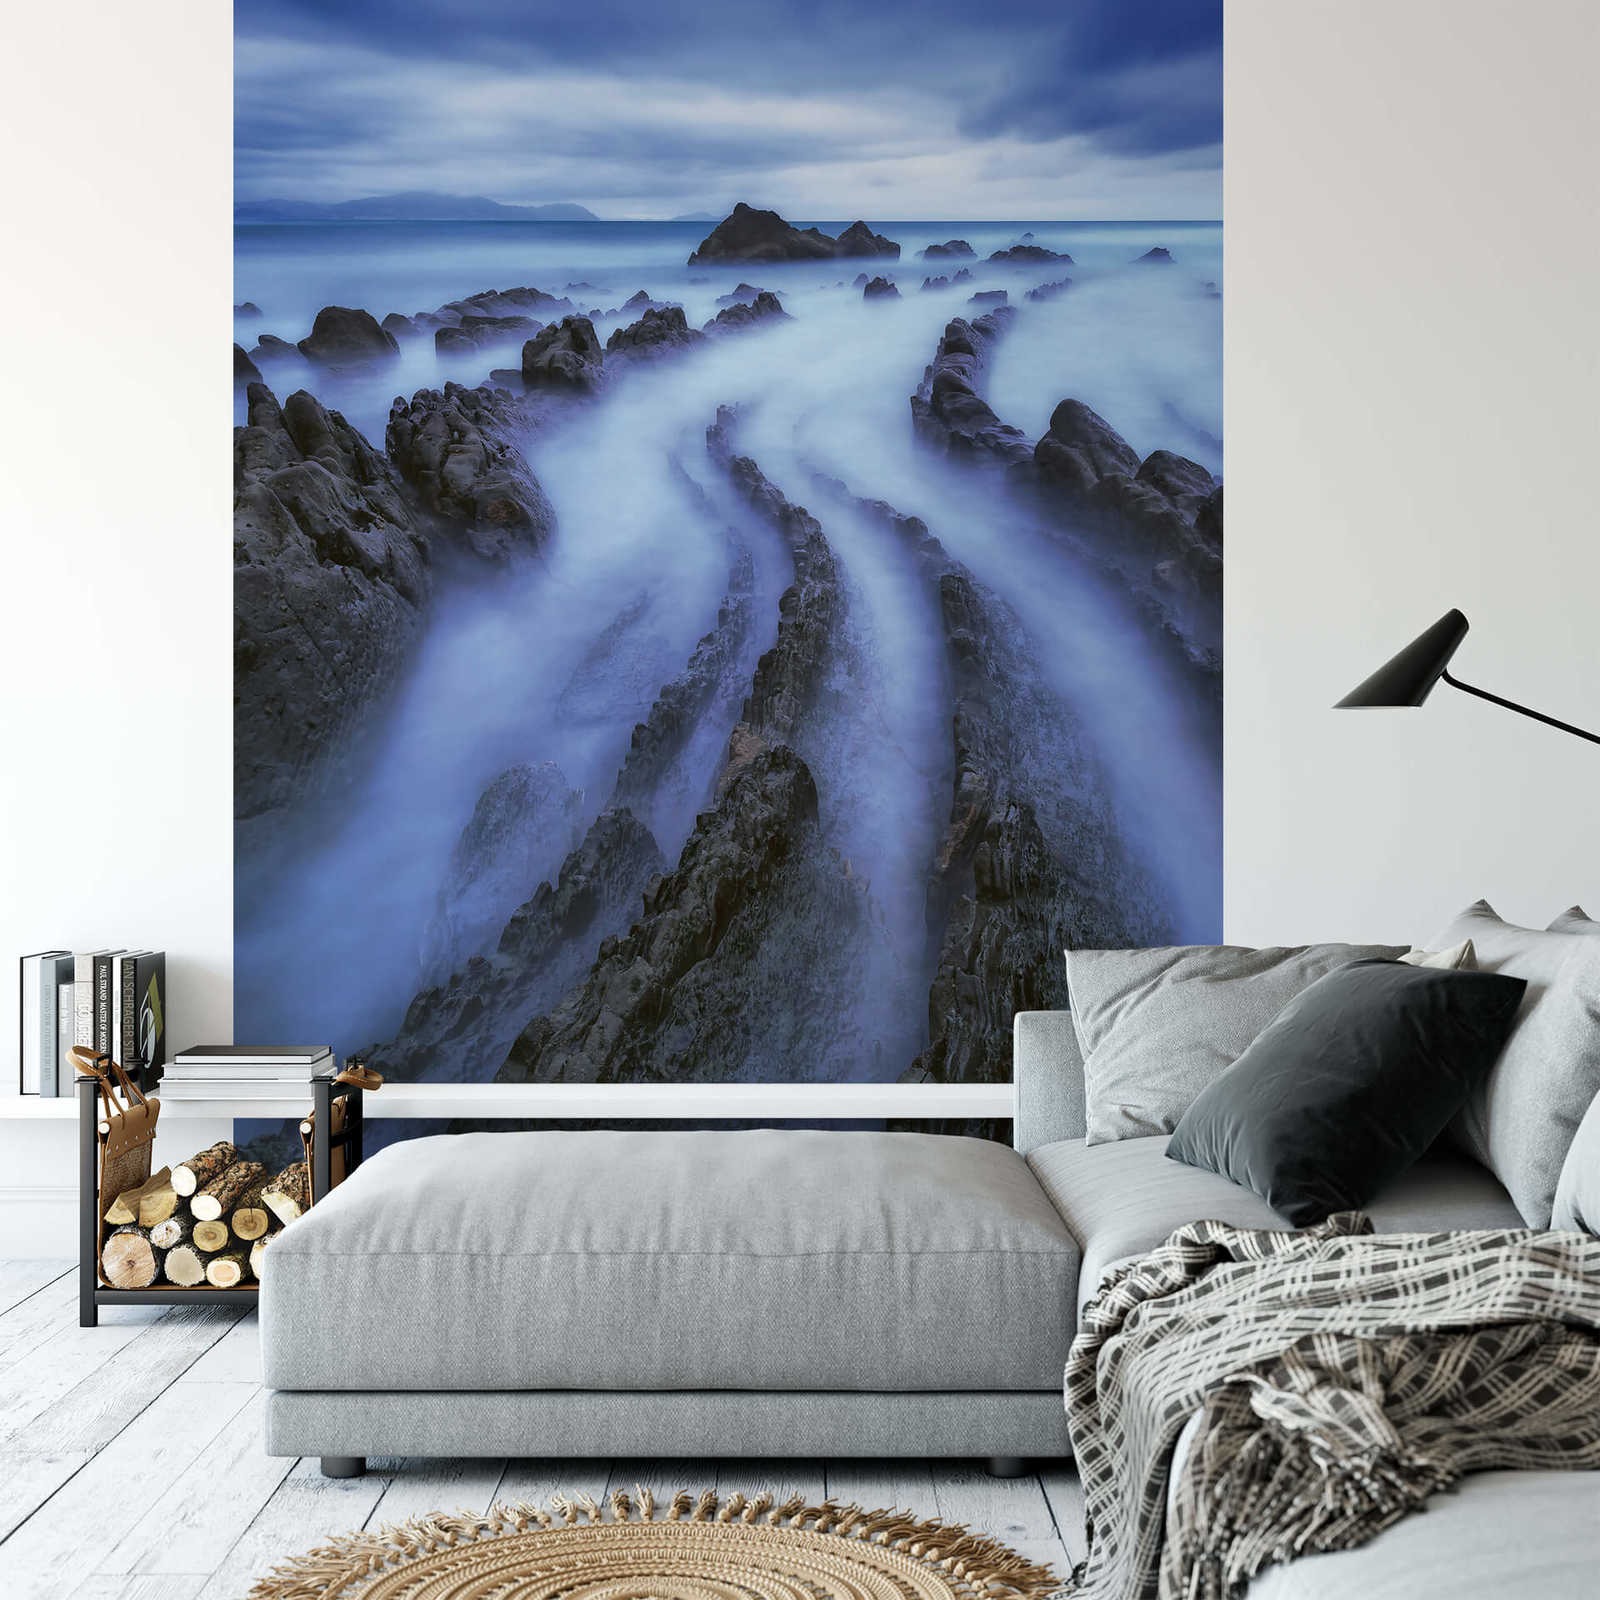             Fotomurali Paesaggio nebbia sul mare - Blu, grigio
        